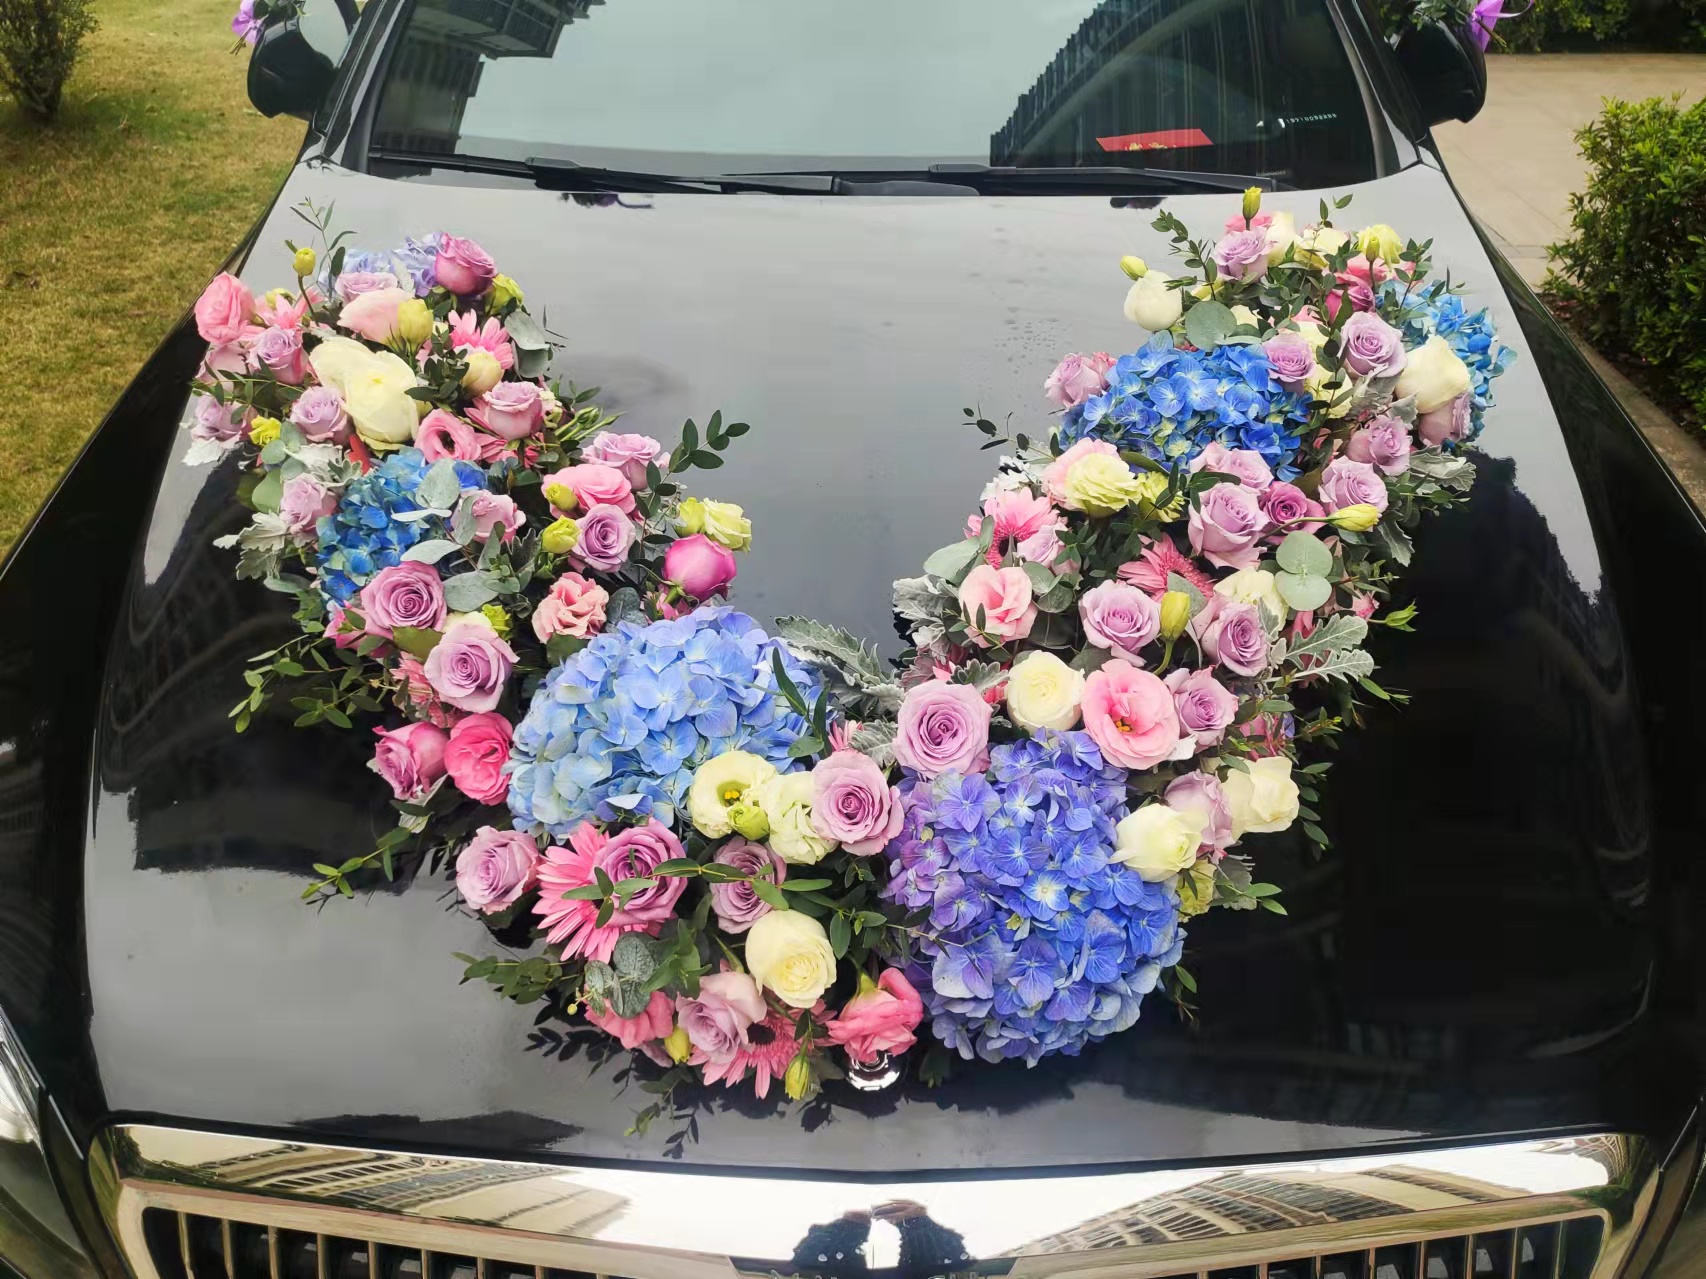 新款韩式车头花 鲜花 婚庆婚车装饰套装